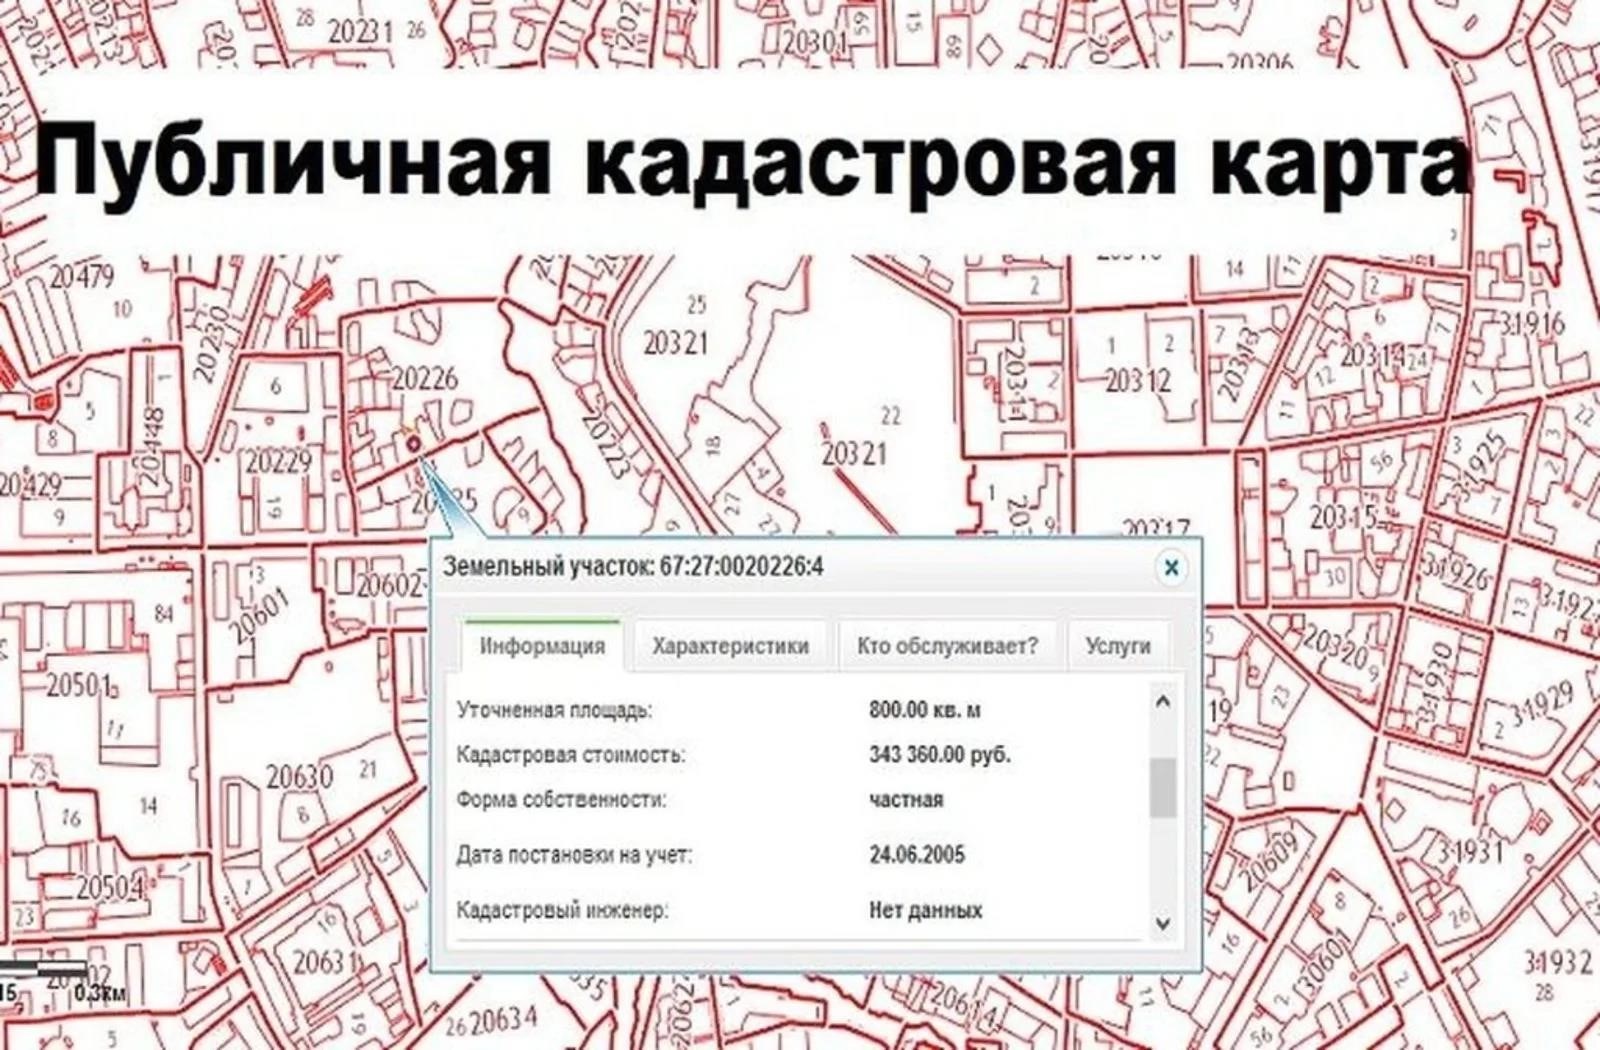 Публичная кадастровая карта пятигорска подробная информация о земельных участках и объектах недвижим